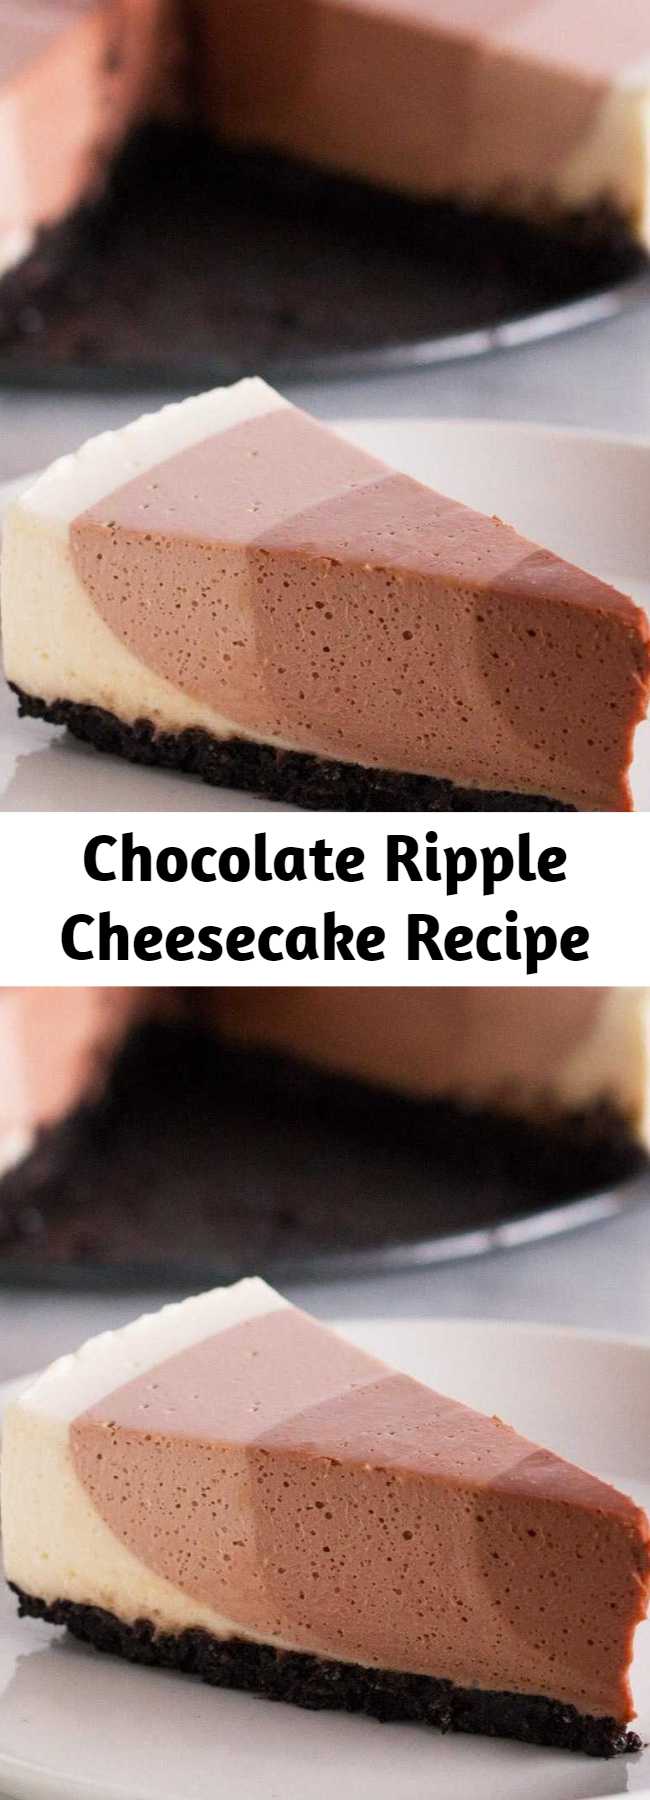 Chocolate Ripple Cheesecake Recipe